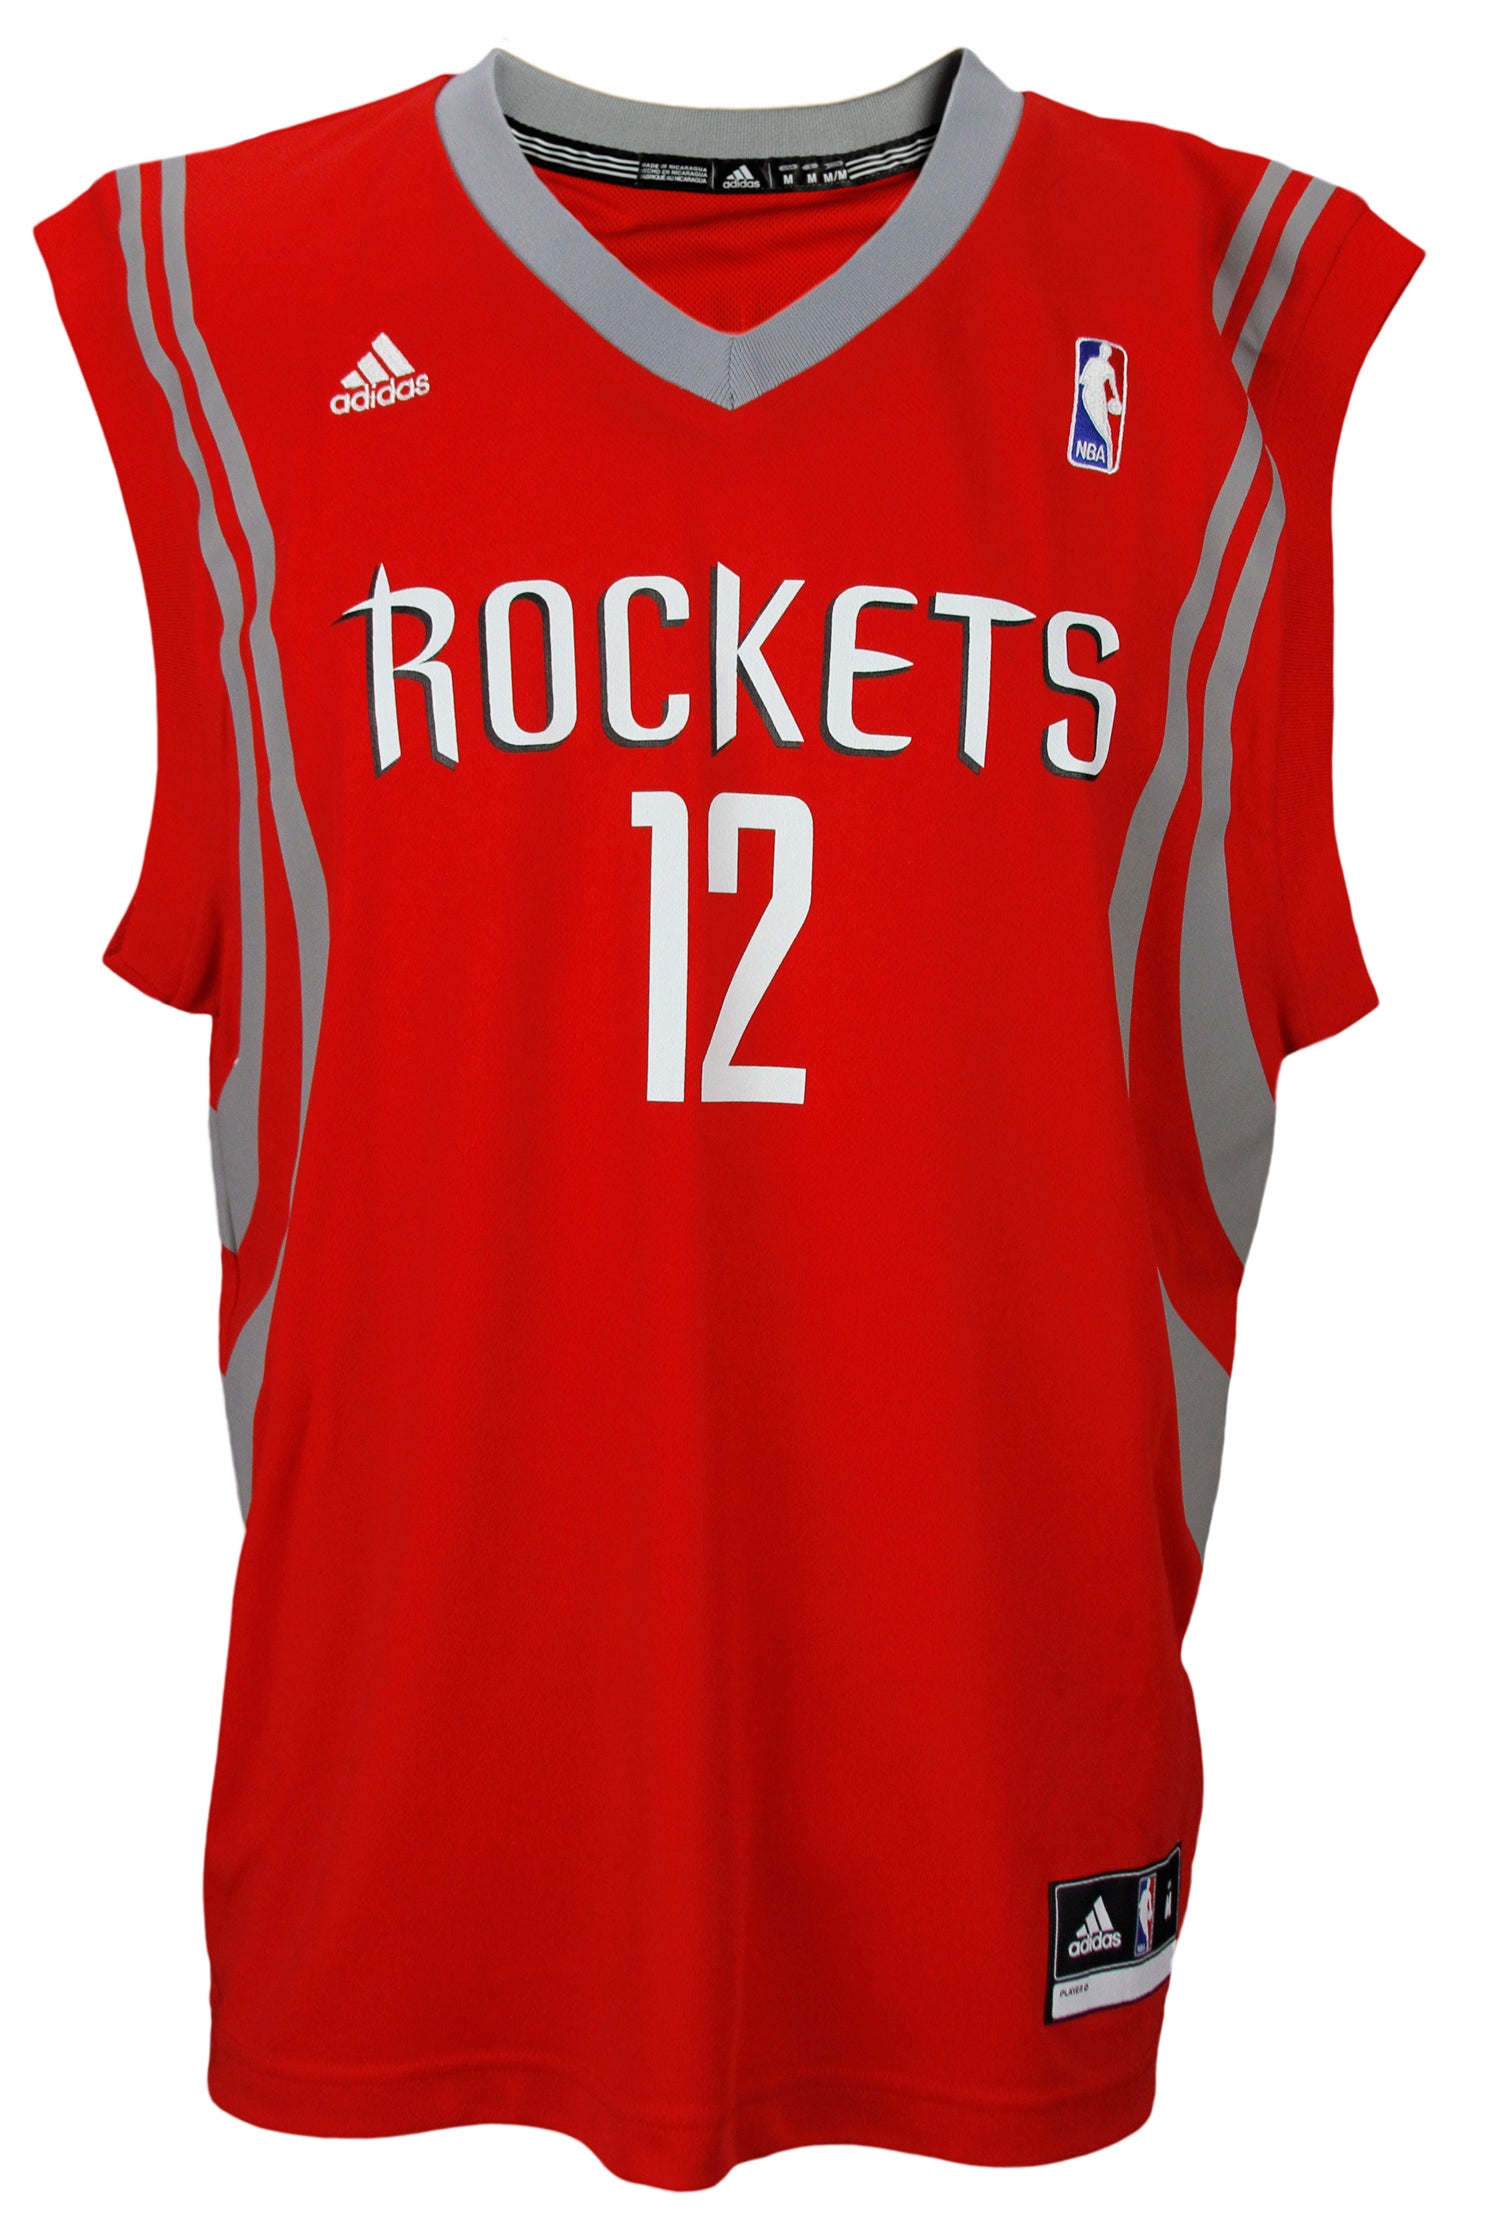 rockets 12 jersey